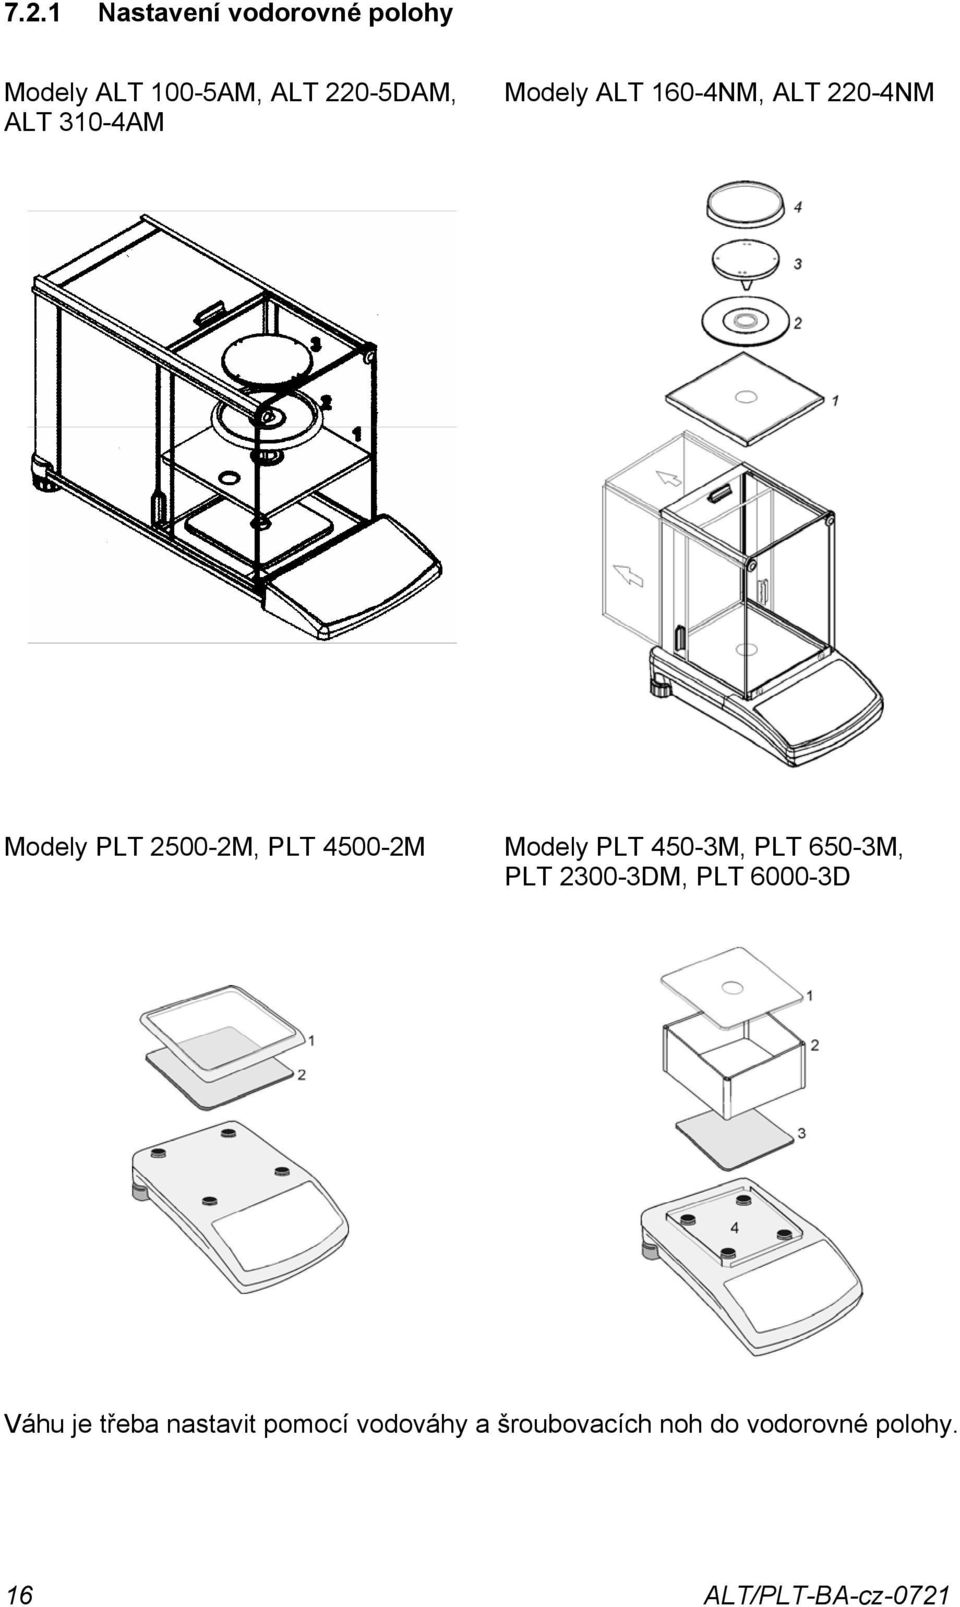 Modely PLT 45-3M, PLT 65-3M, PLT 23-3DM, PLT 6-3D Váhu je třeba